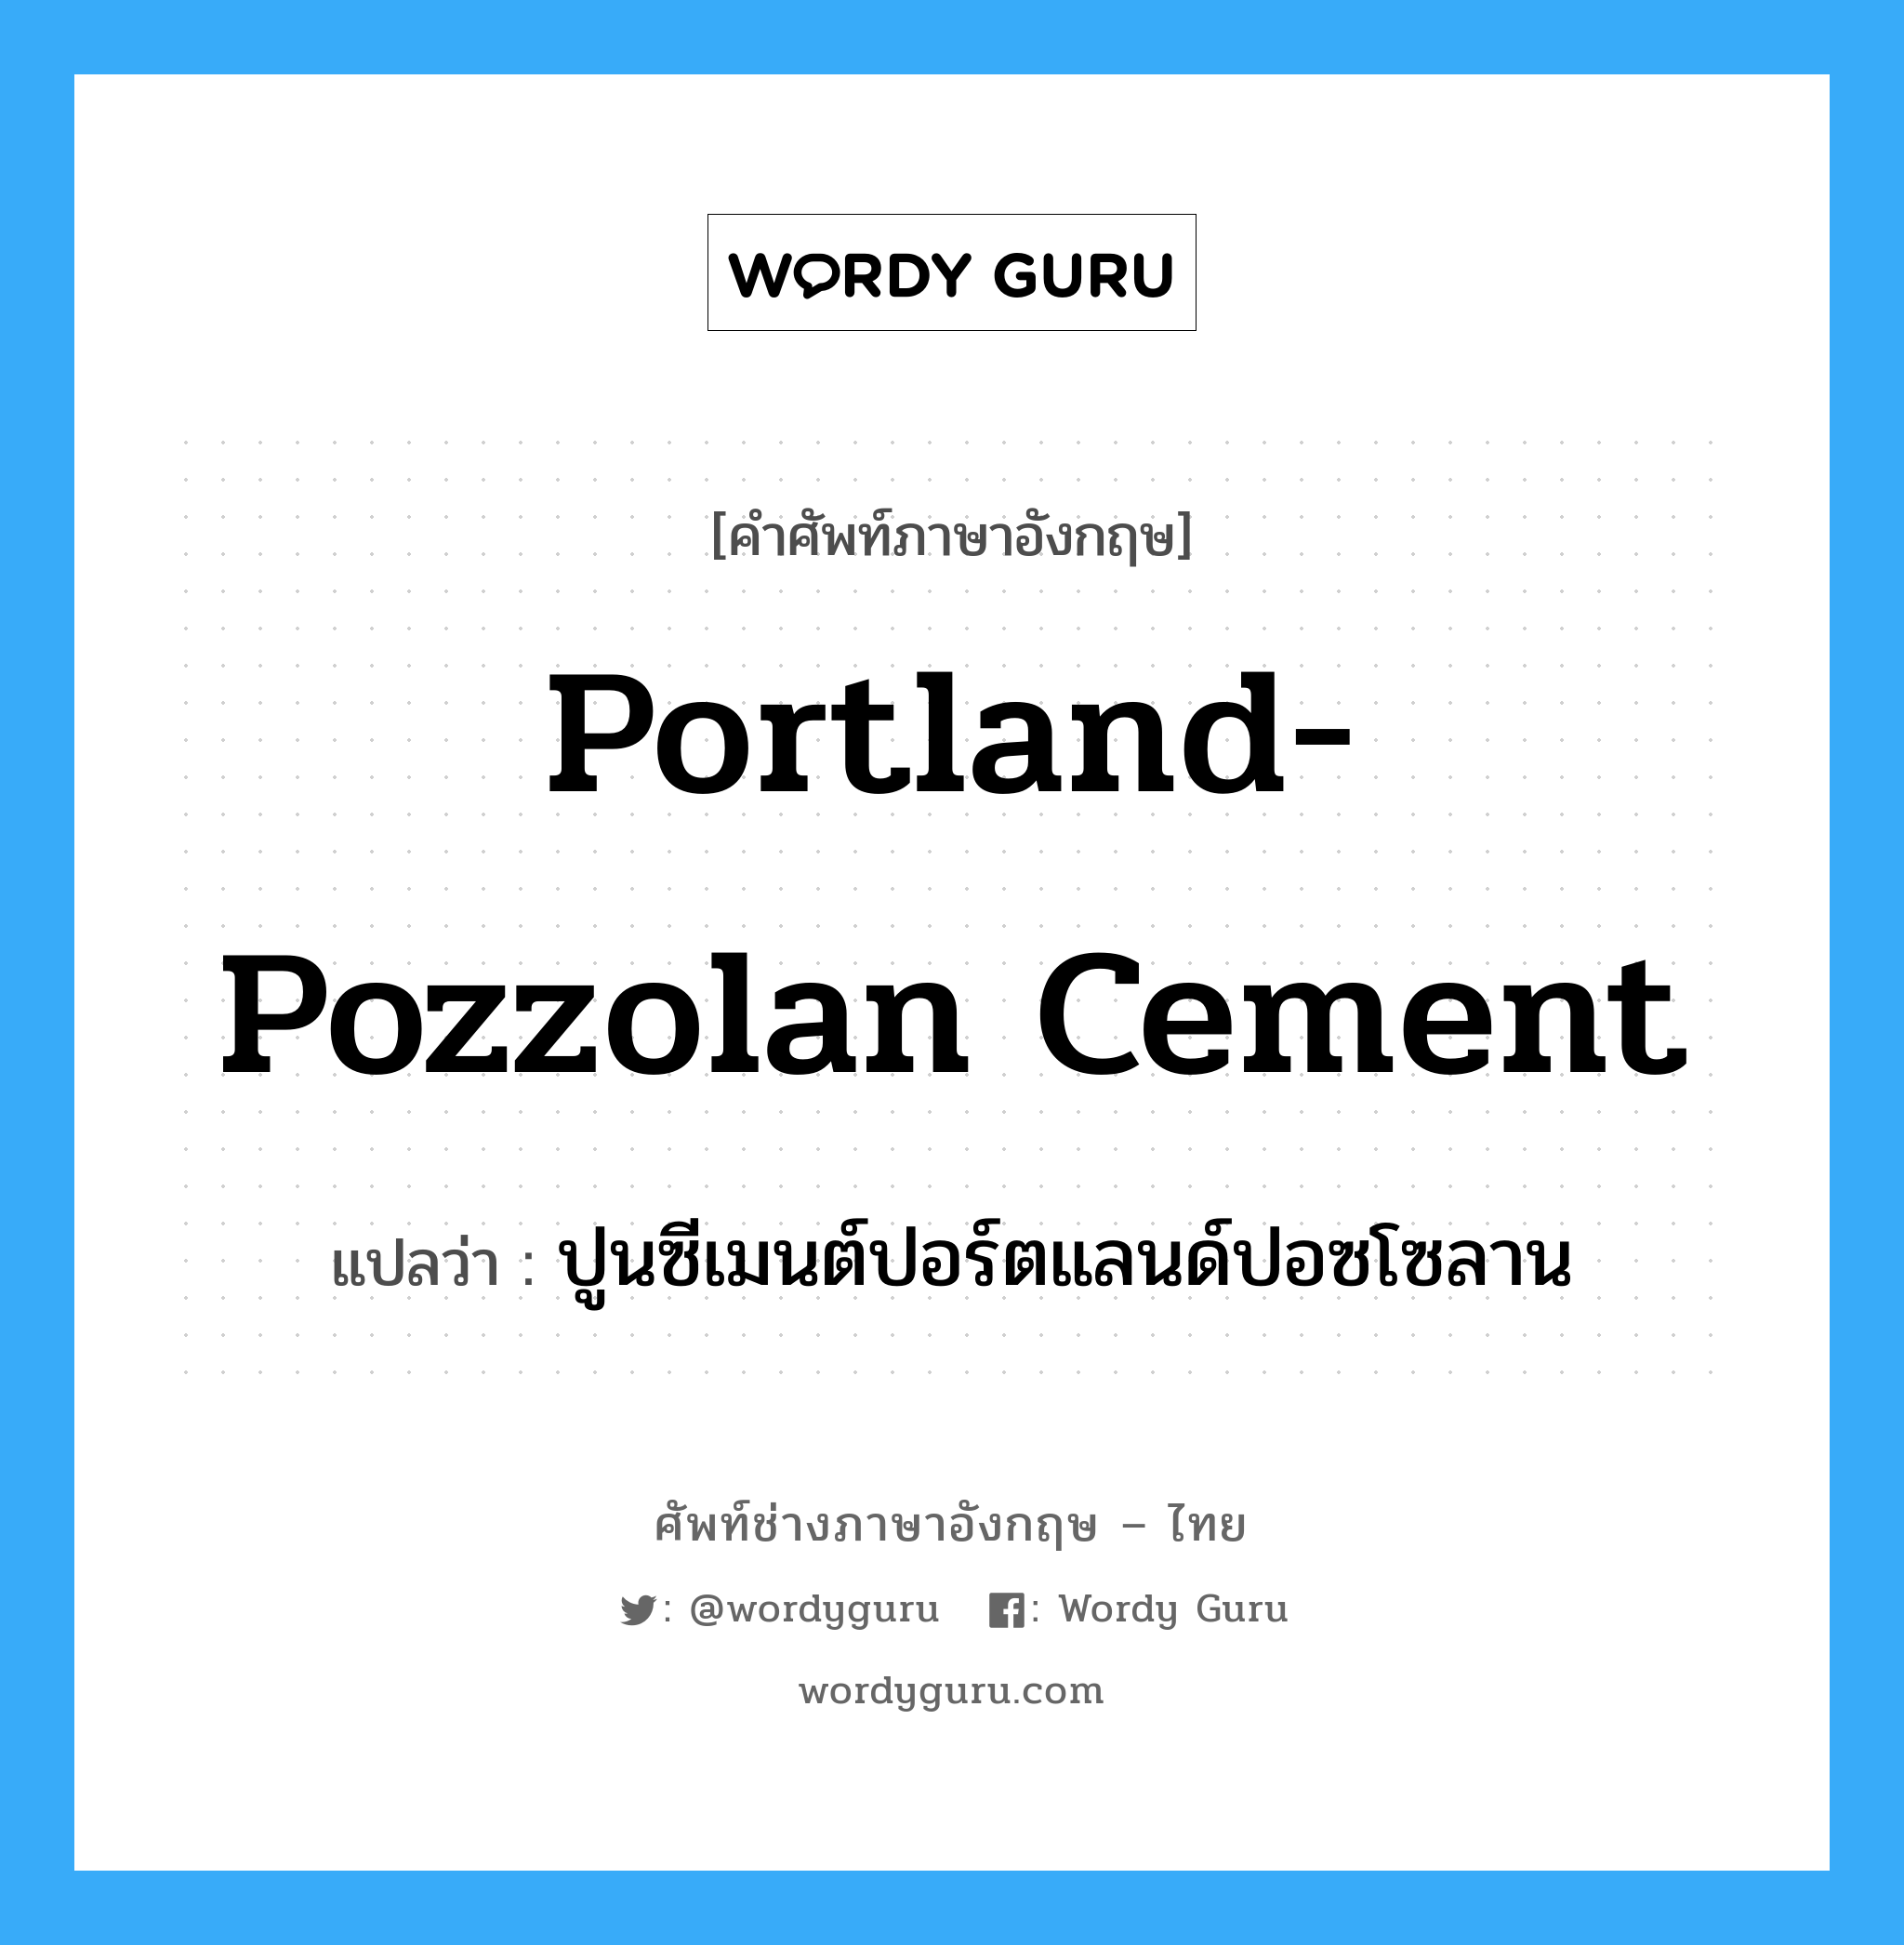 ปูนซีเมนต์ปอร์ตแลนด์ปอซโซลาน ภาษาอังกฤษ?, คำศัพท์ช่างภาษาอังกฤษ - ไทย ปูนซีเมนต์ปอร์ตแลนด์ปอซโซลาน คำศัพท์ภาษาอังกฤษ ปูนซีเมนต์ปอร์ตแลนด์ปอซโซลาน แปลว่า portland-pozzolan cement